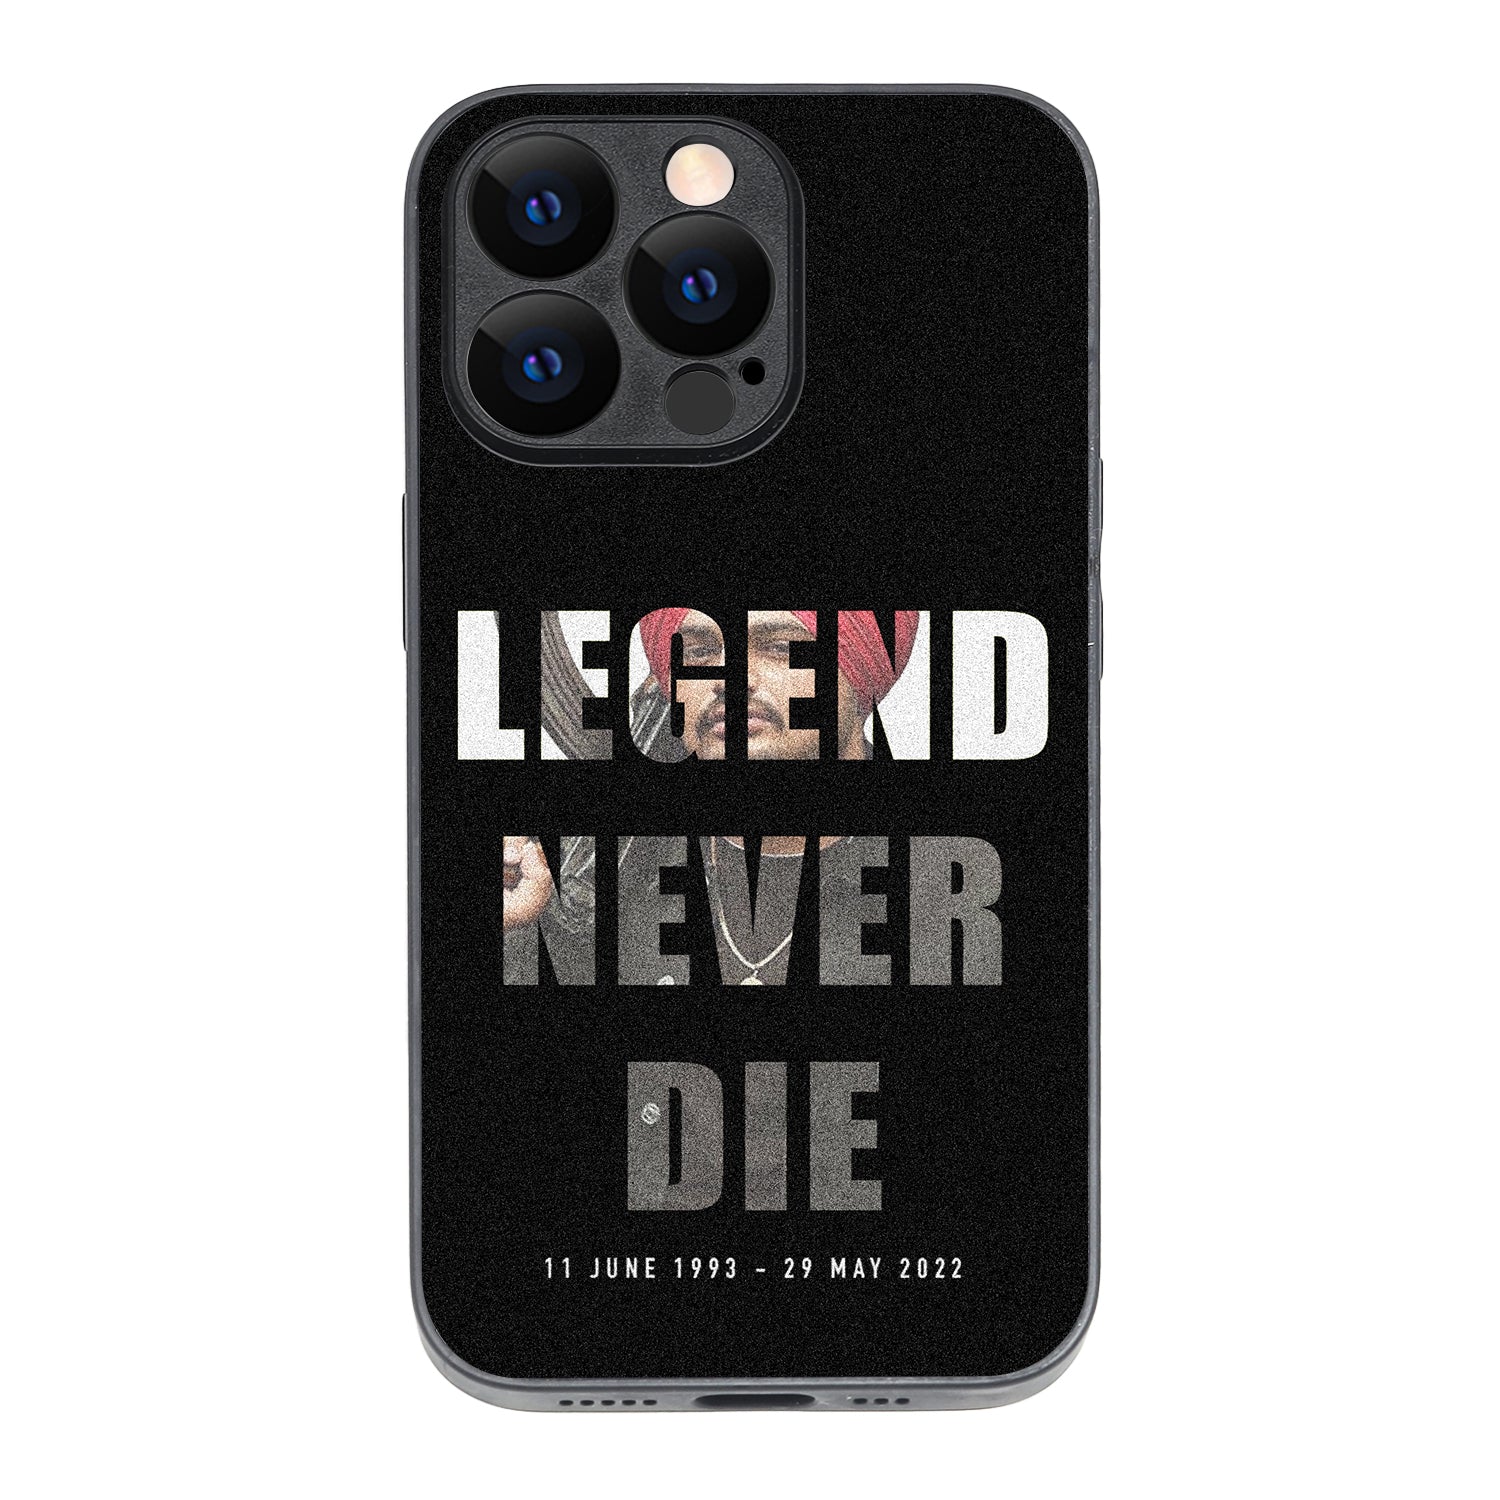 Legend Never Die 2.0 Sidhu Moosewala iPhone 13 Pro Case